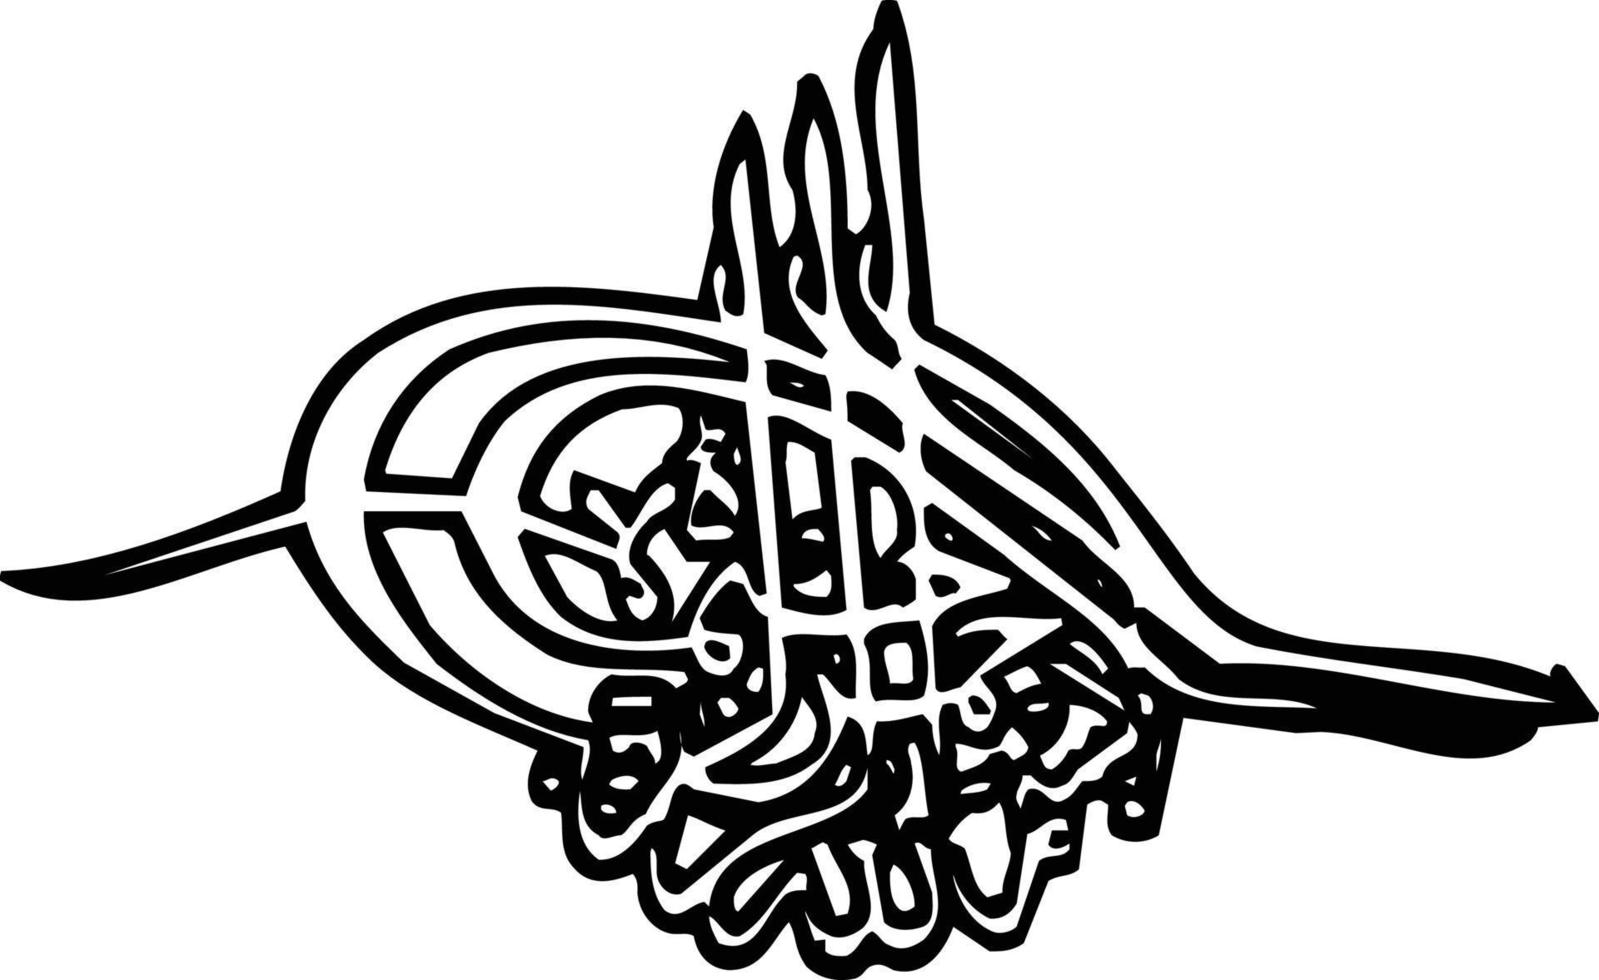 vector libre de caligrafía islámica de título bismila